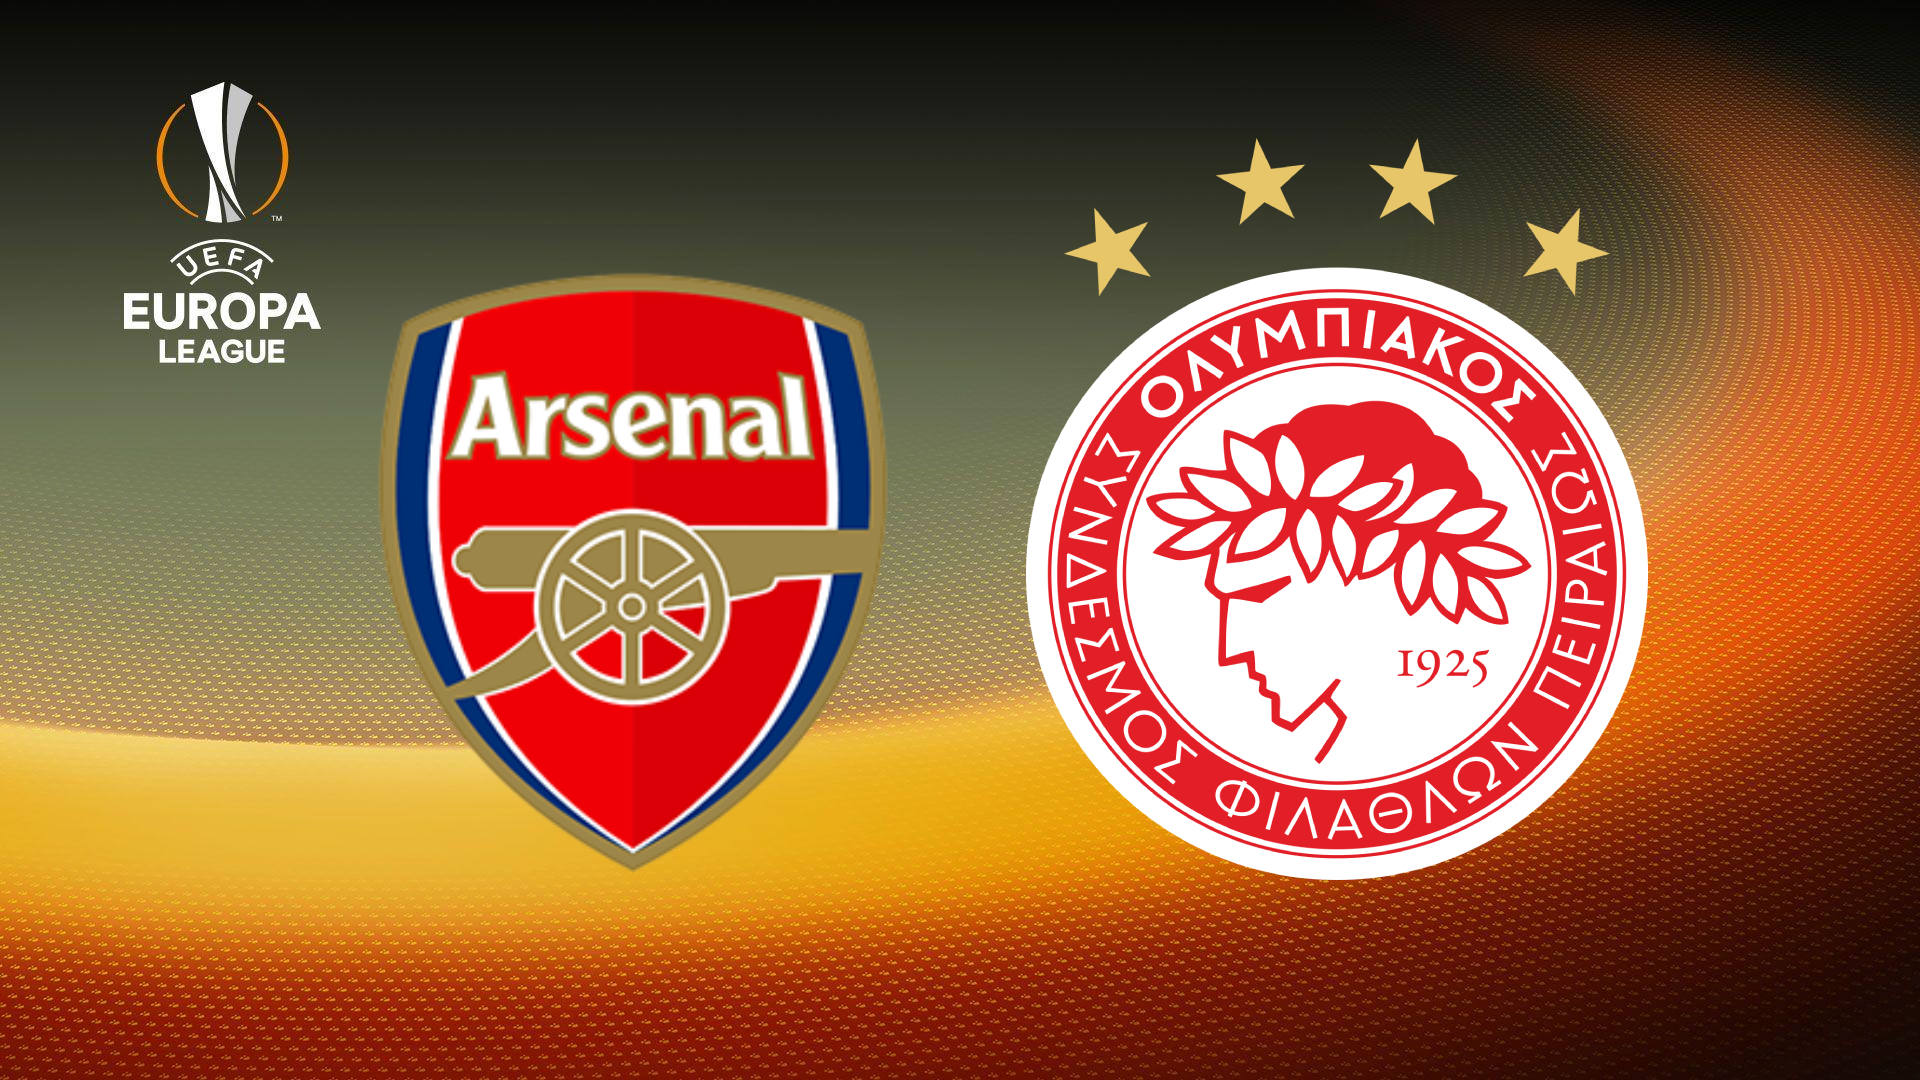 Nhận định Arsenal vs Olympiacos (0h55 ngày 19/3): Khó có thần thoại trên đất Anh